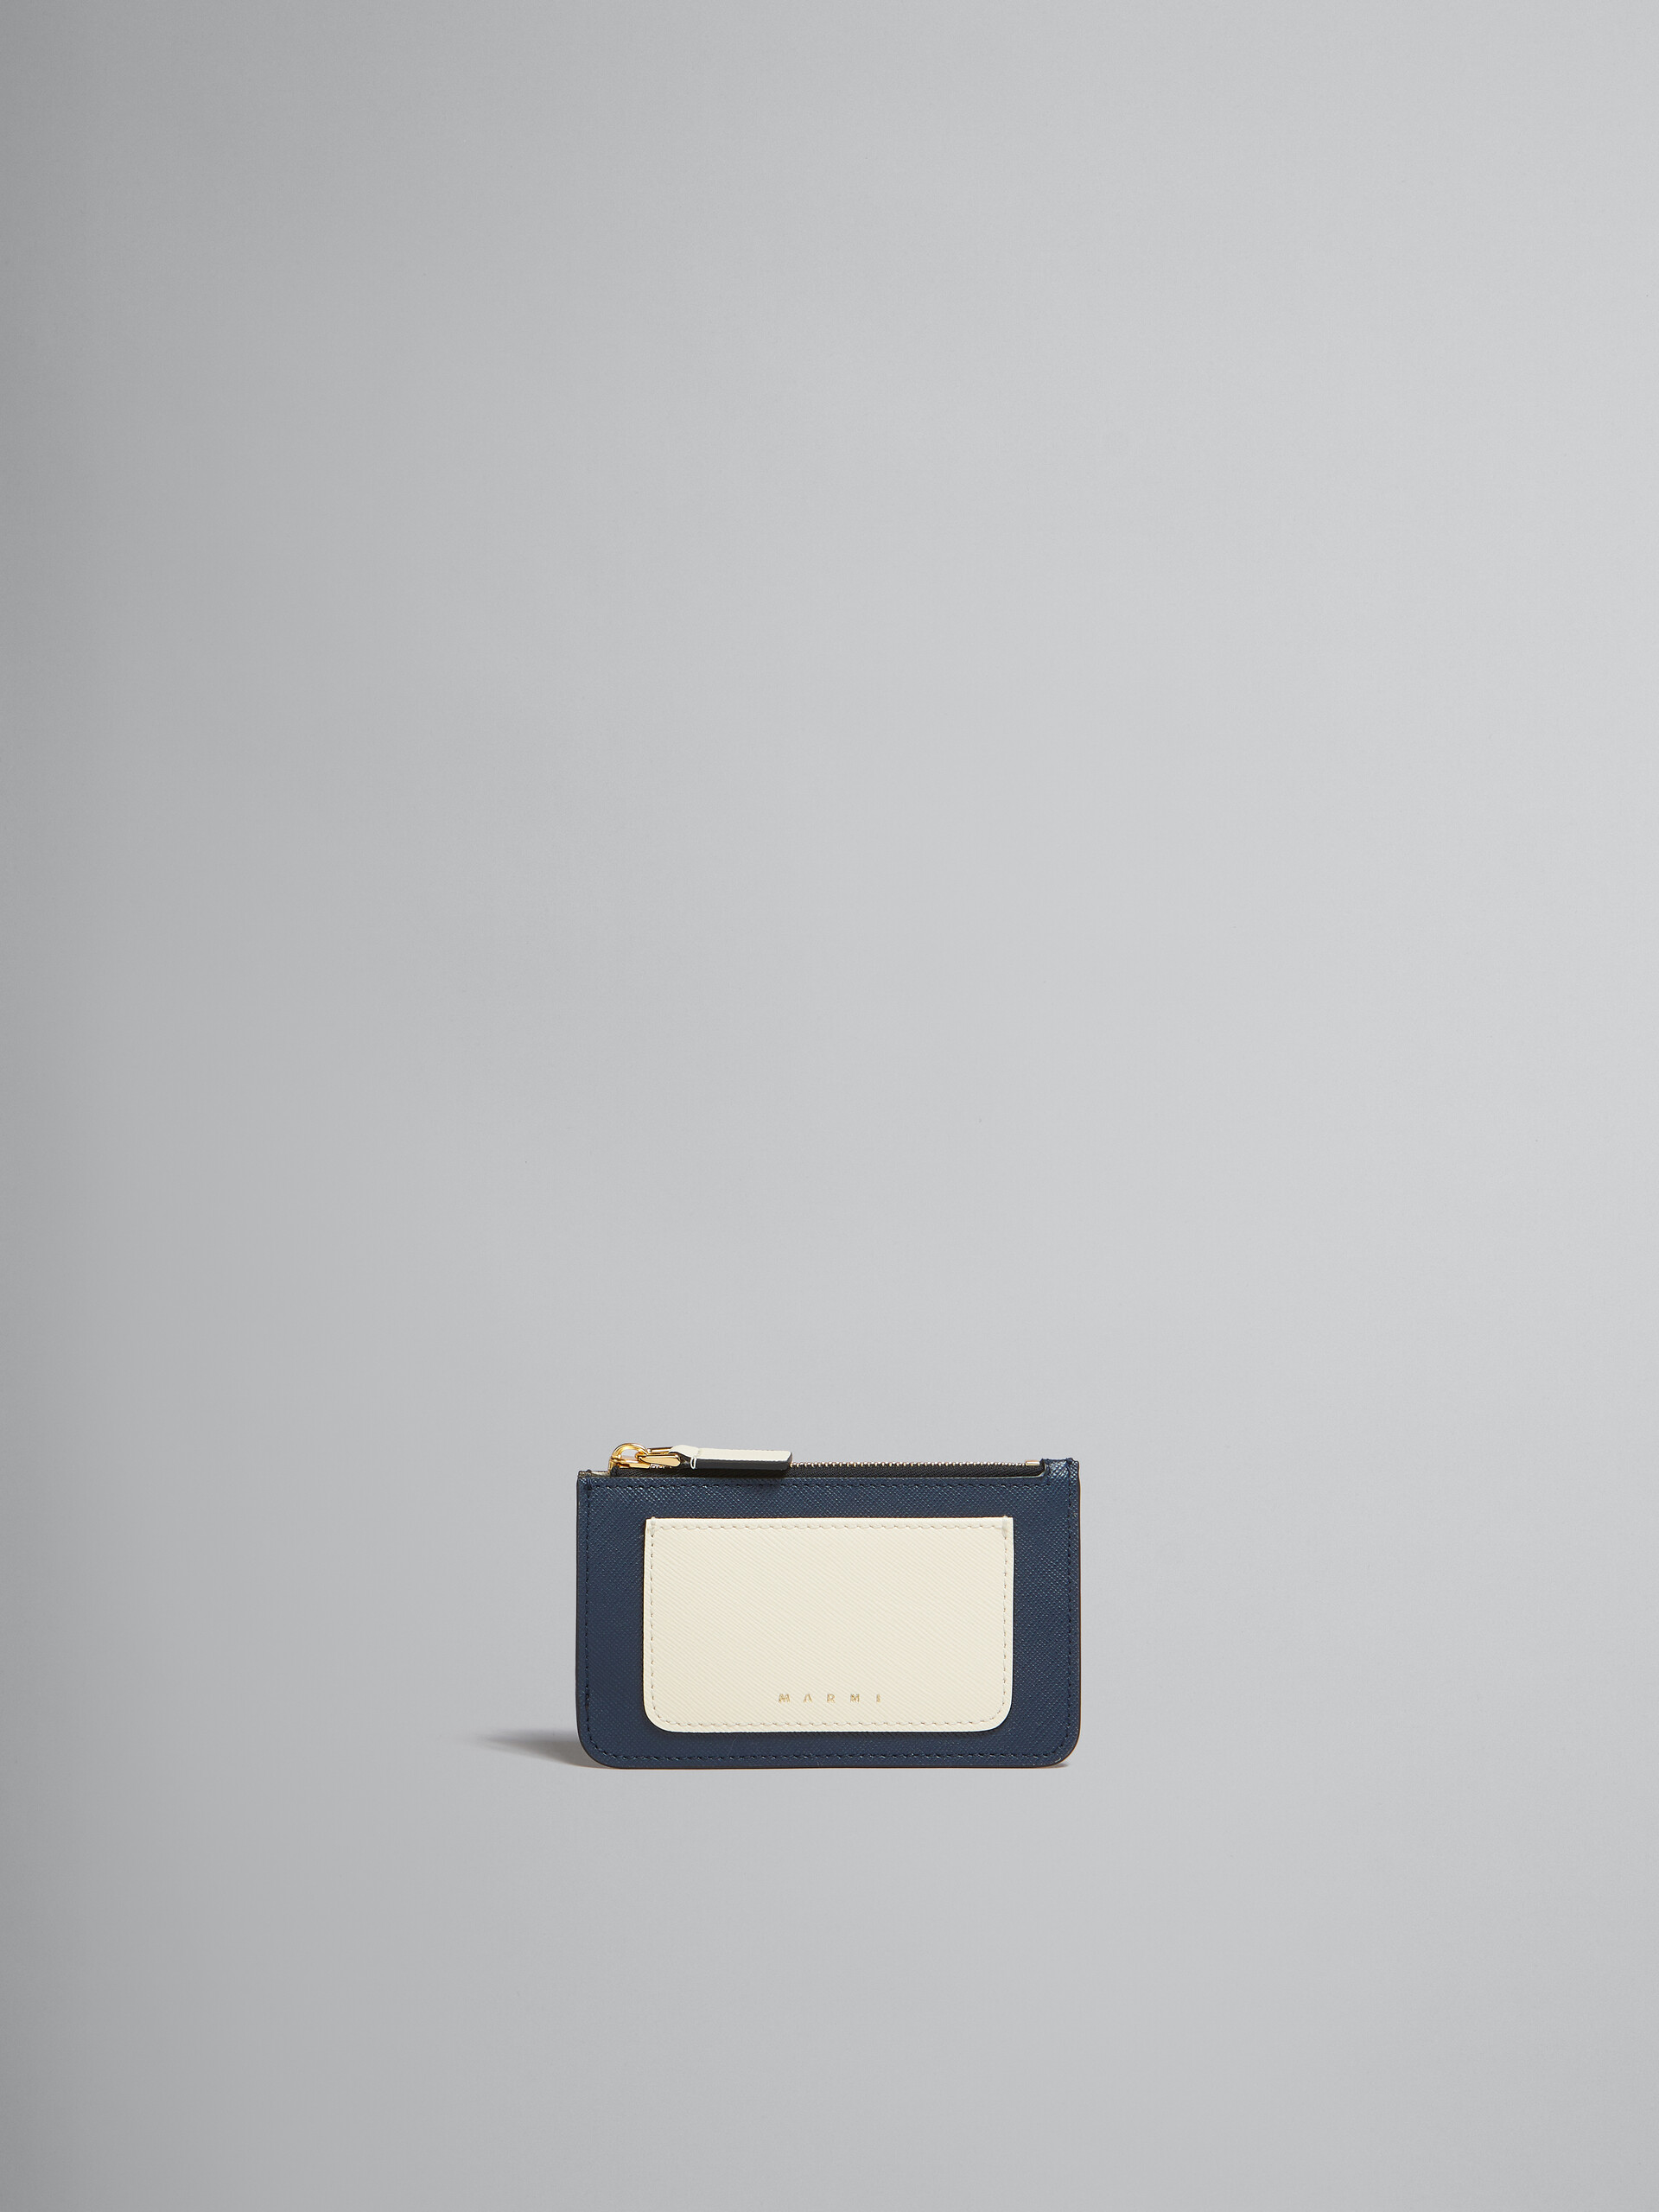 라이트 그린 화이트 및 브라운 사피아노 가죽 카드 케이스 - 지갑 - Image 1